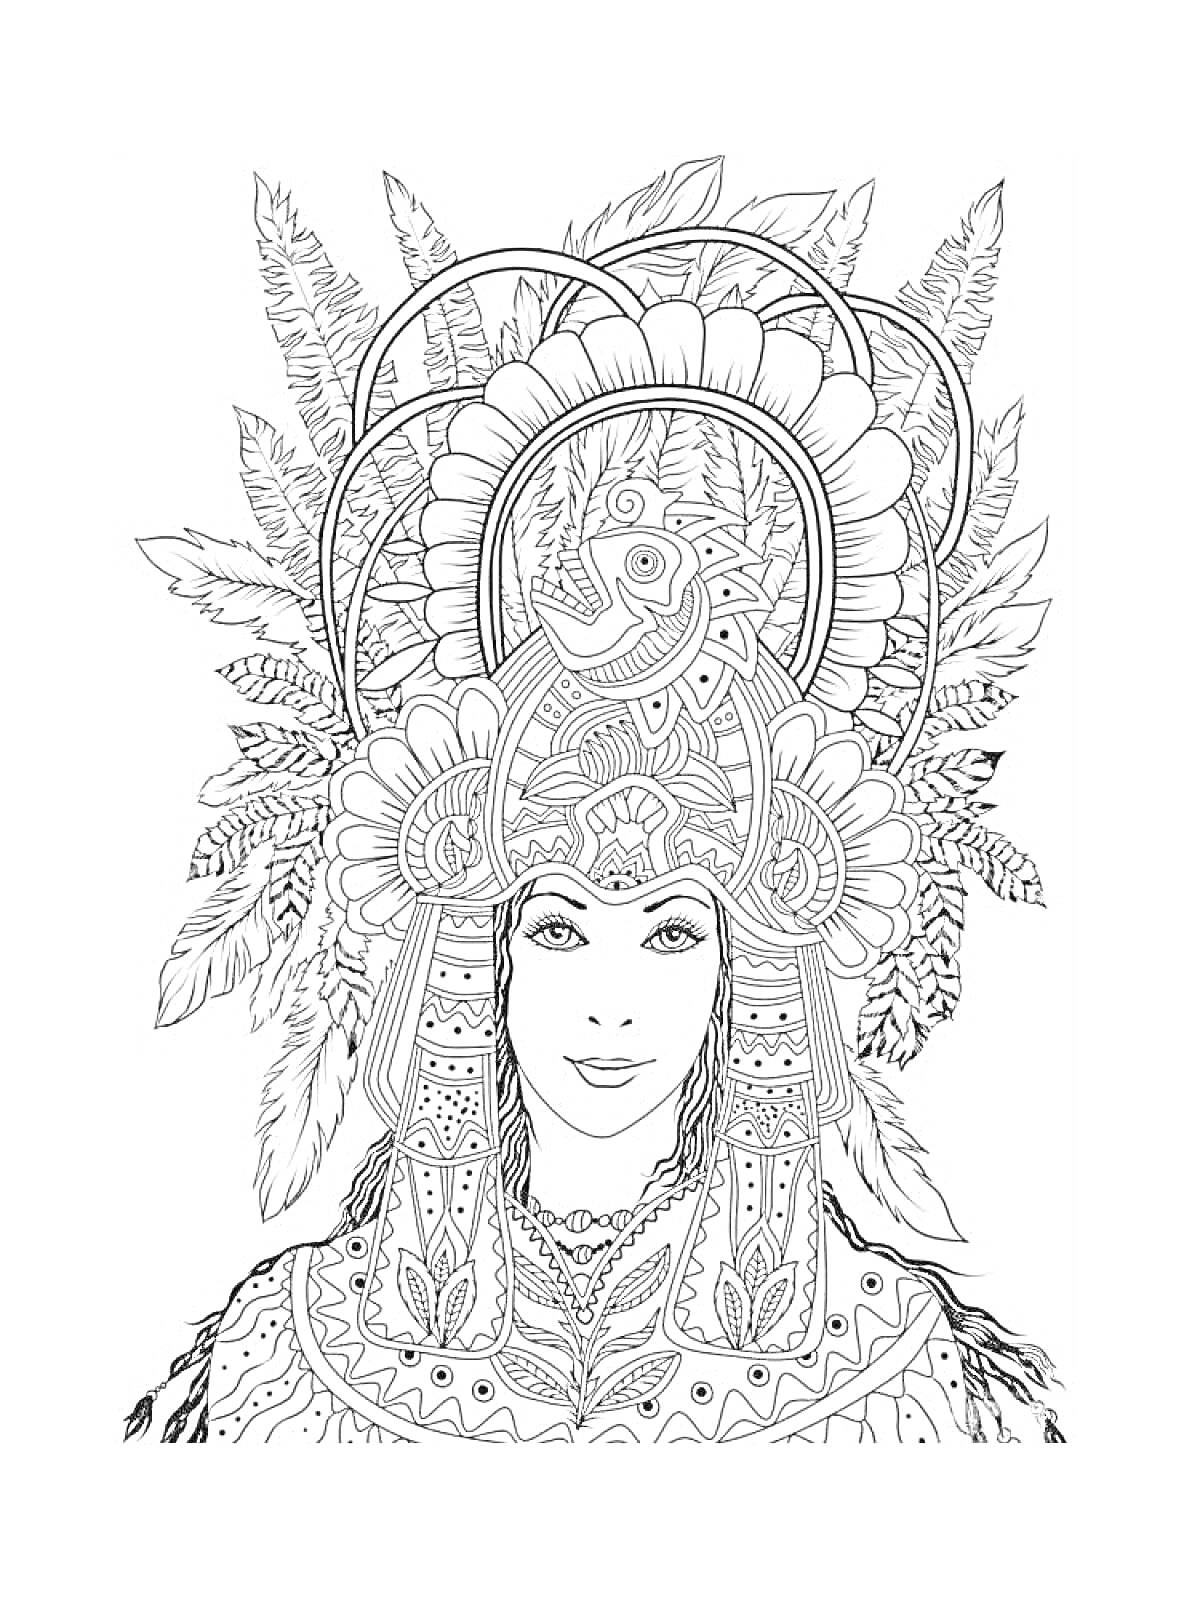 Женщина в карнавальном костюме с большим головным убором из перьев и узоров